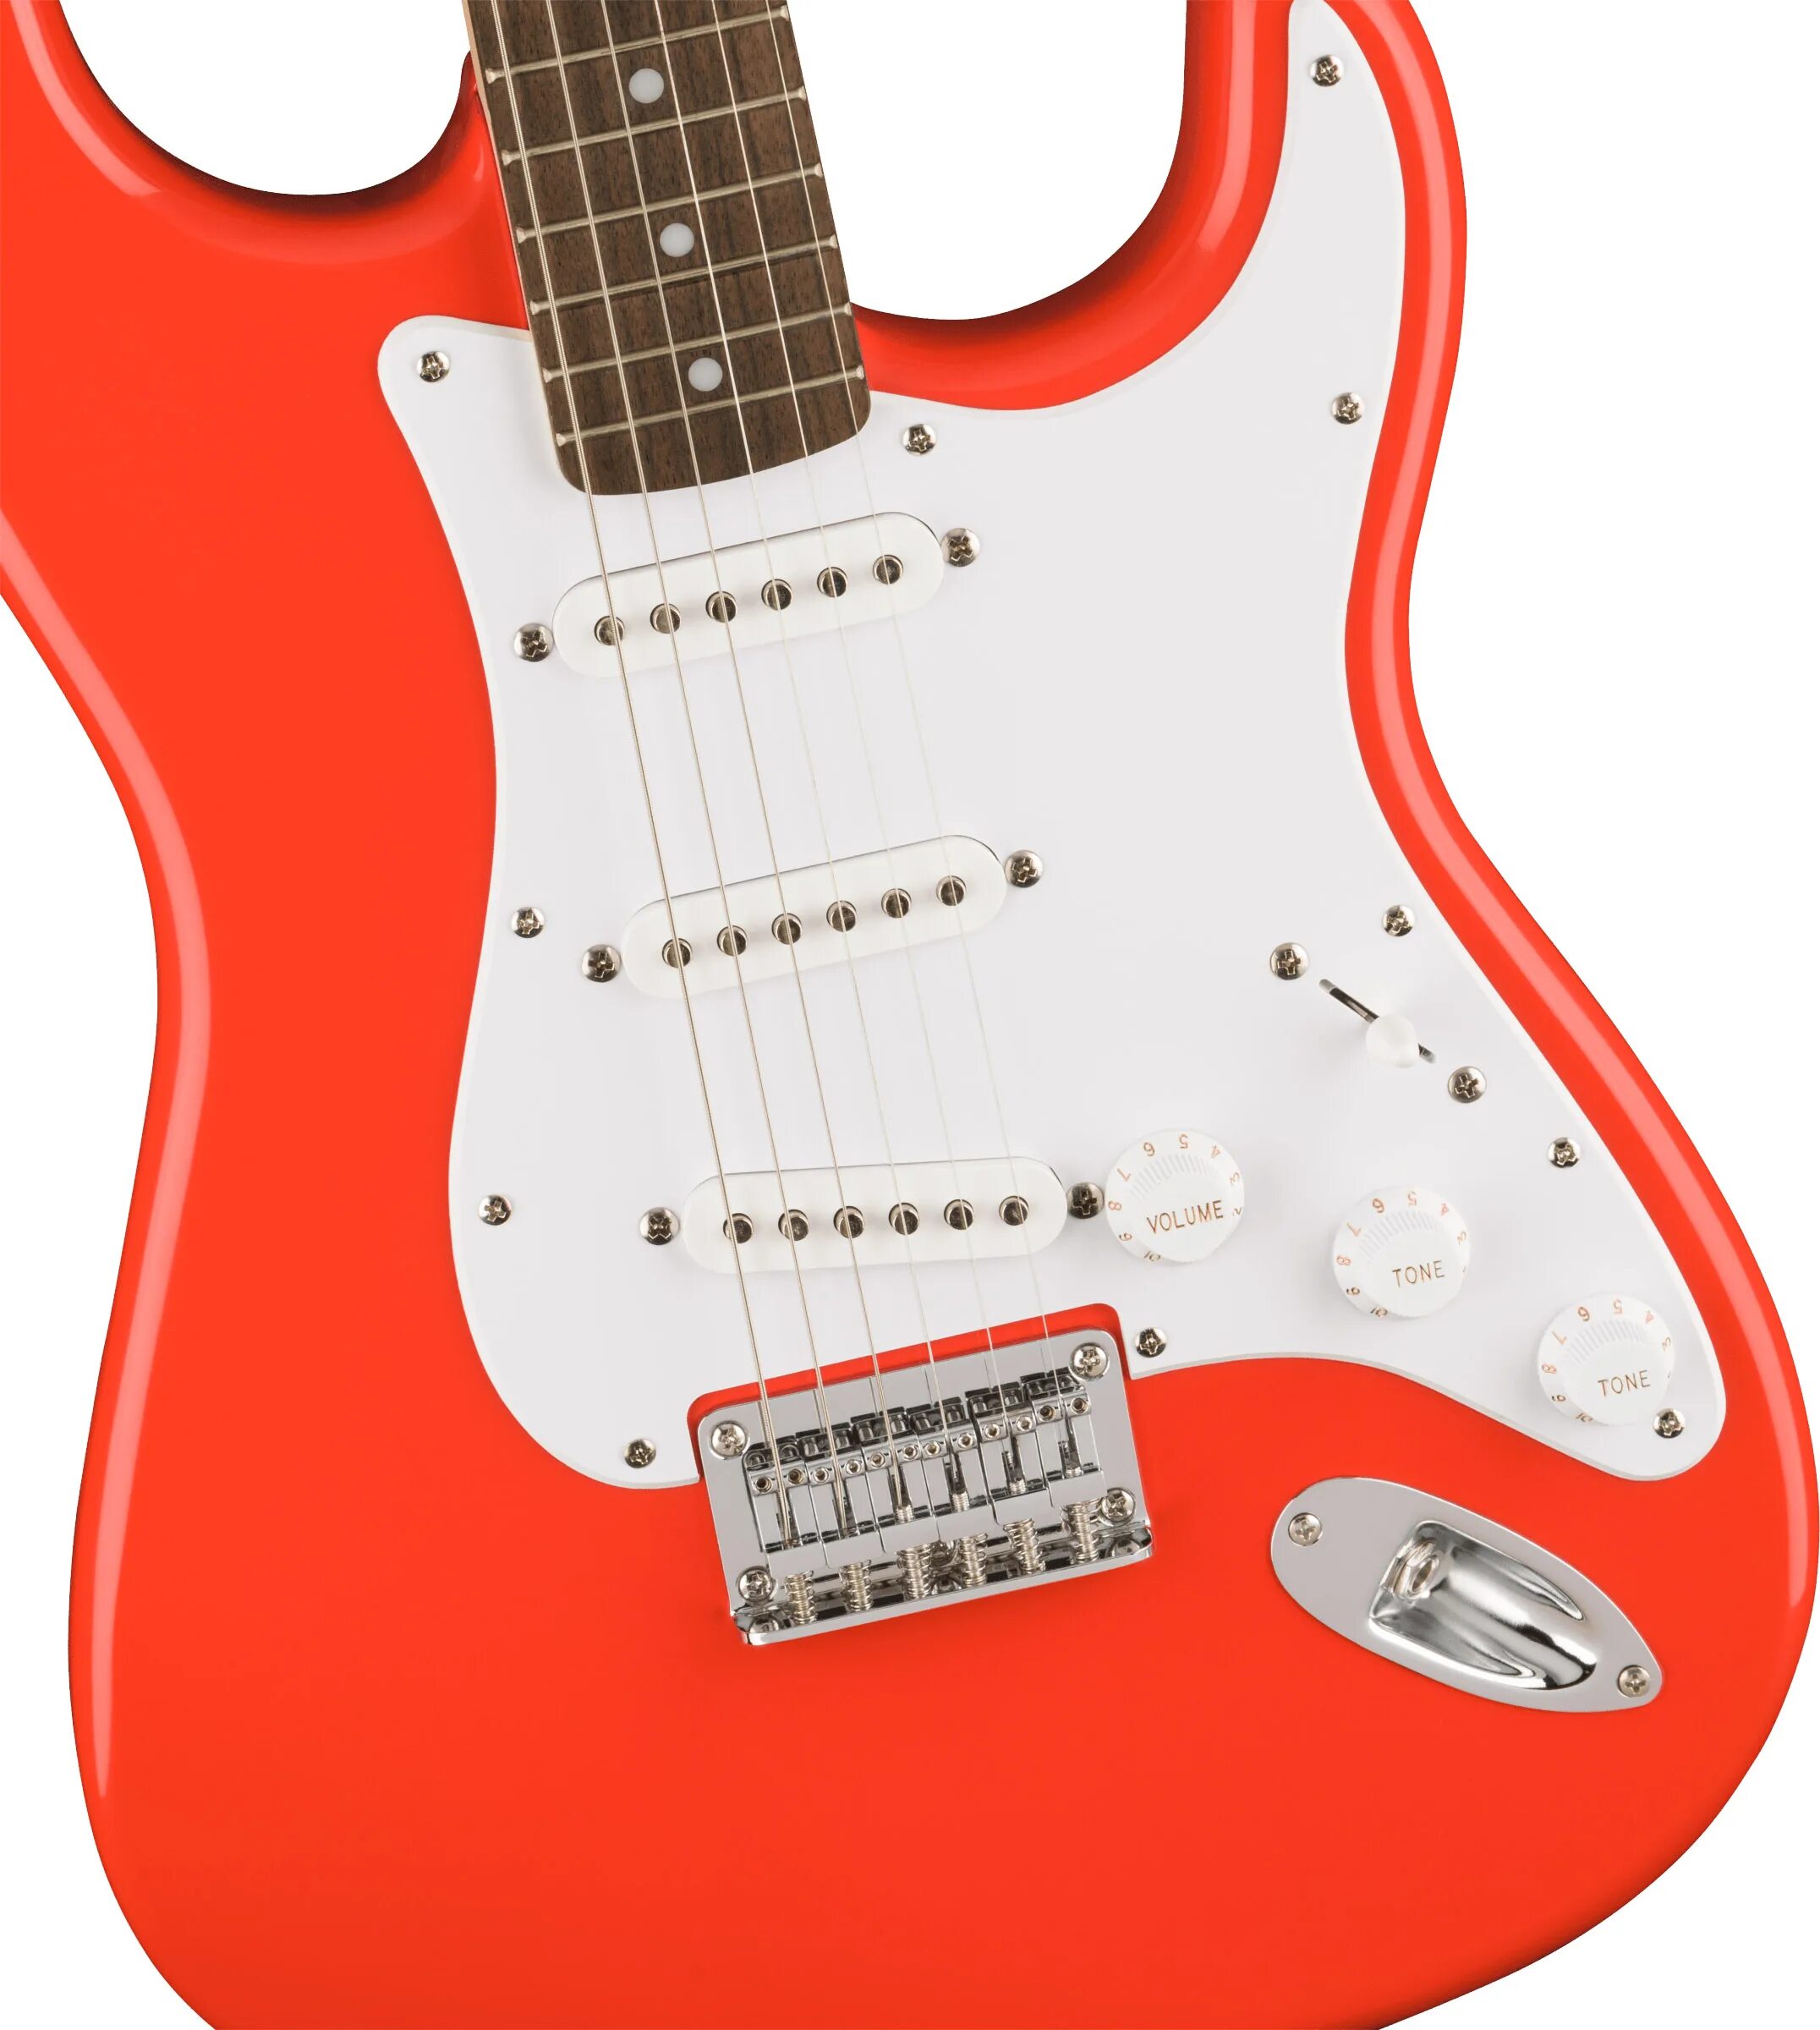 Squier stratocaster купить. Электрогитара Fender Squier. Fiesta Red Stratocaster. Электрогитара Squier Bullet Strat by Fender. Электрогитара Squier by Fender Stratocaster HSS.